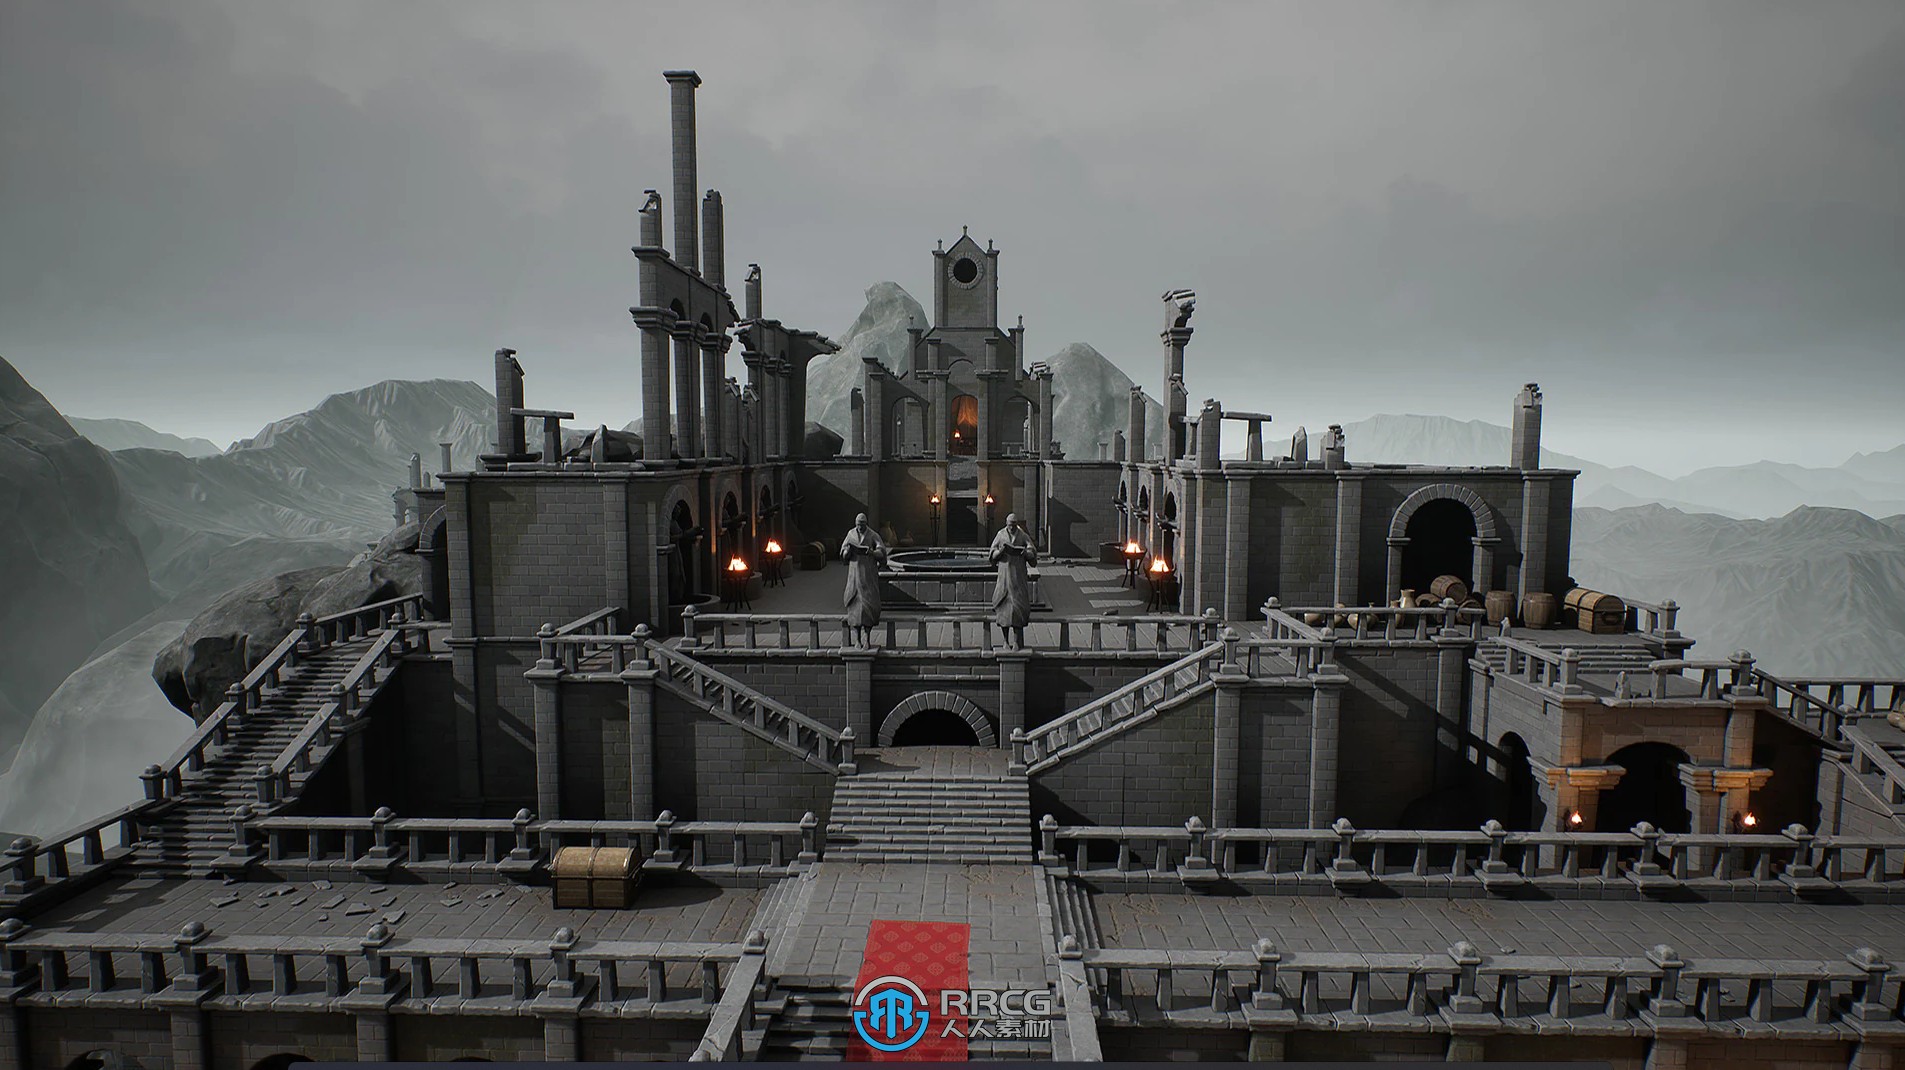 奇幻城堡内外部环境场景Unreal UE游戏素材